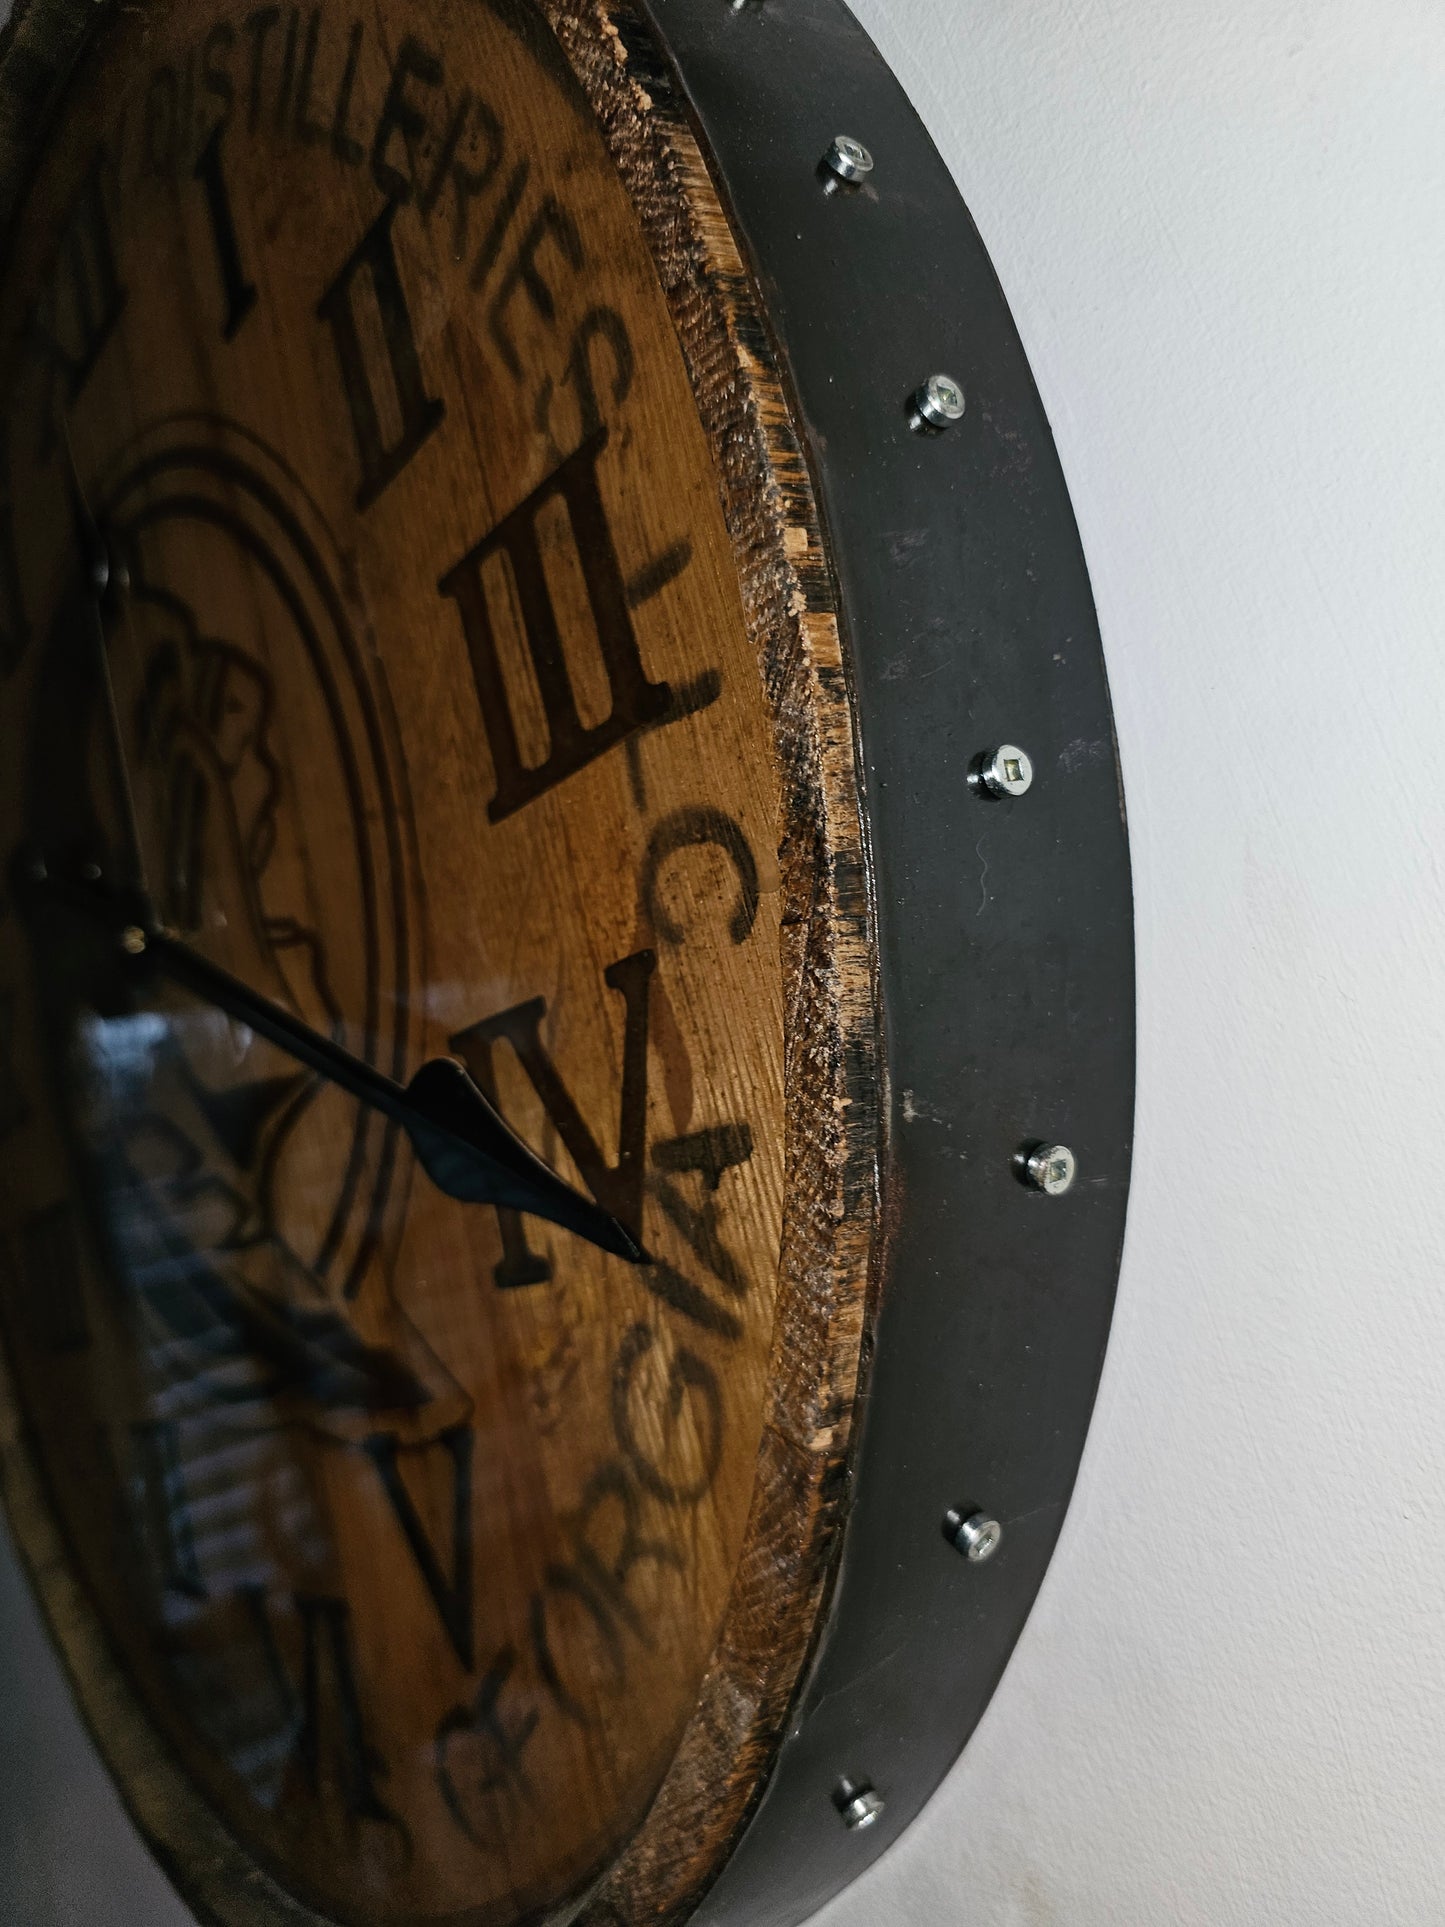 Clock FSU Logo Whiskey Barrel